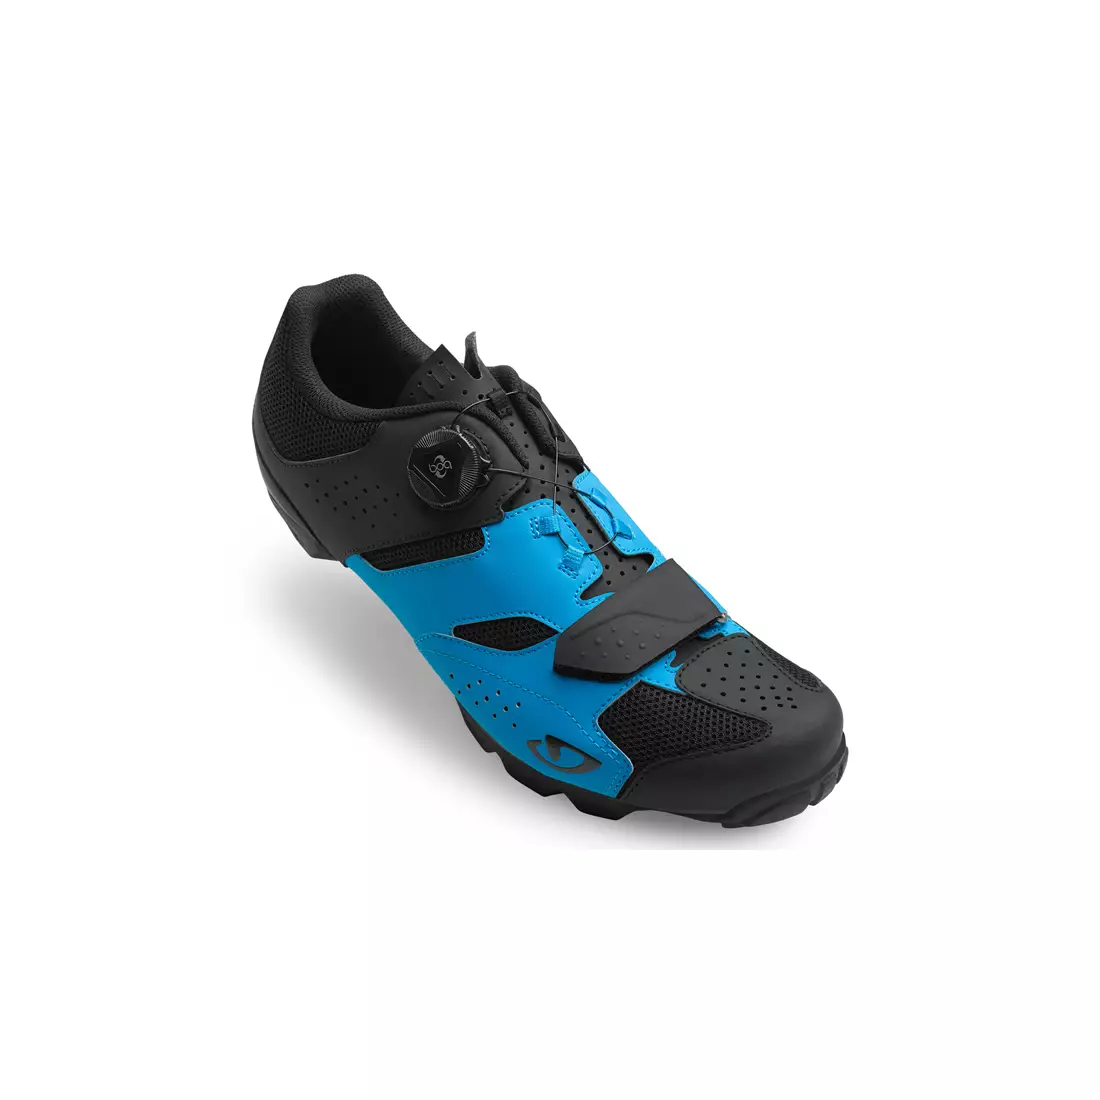 GIRO CYLINDER - Men's MTB cycling shoes black/blue